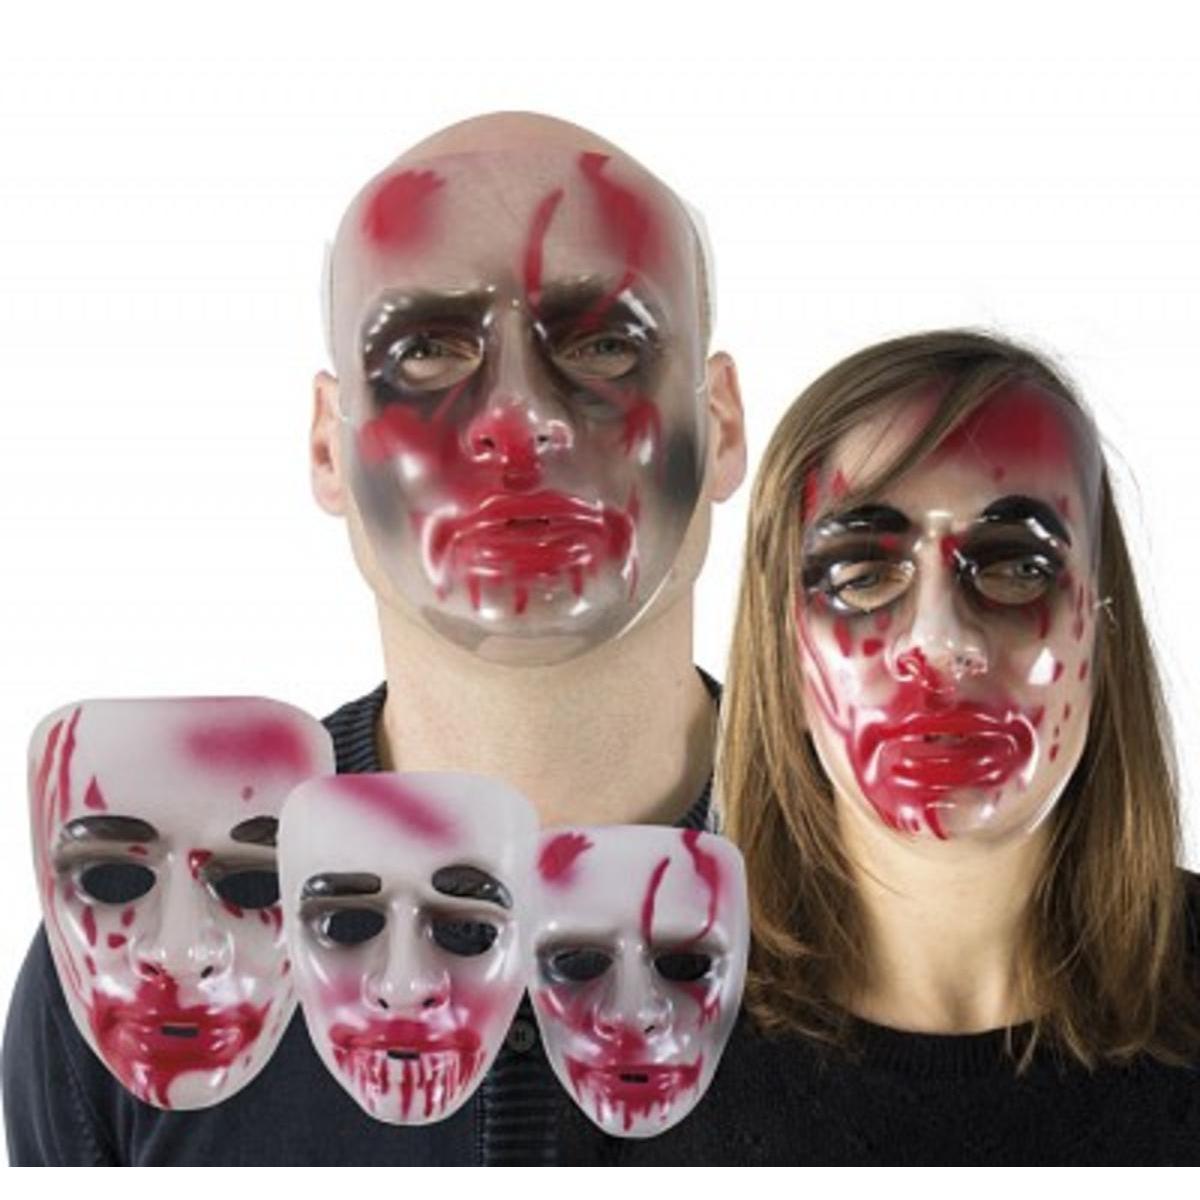 Masque adulte sanglant - Différents modèles assortis - L 24 x H 7 x l 15 cm - Multicolore - PTIT CLOWN